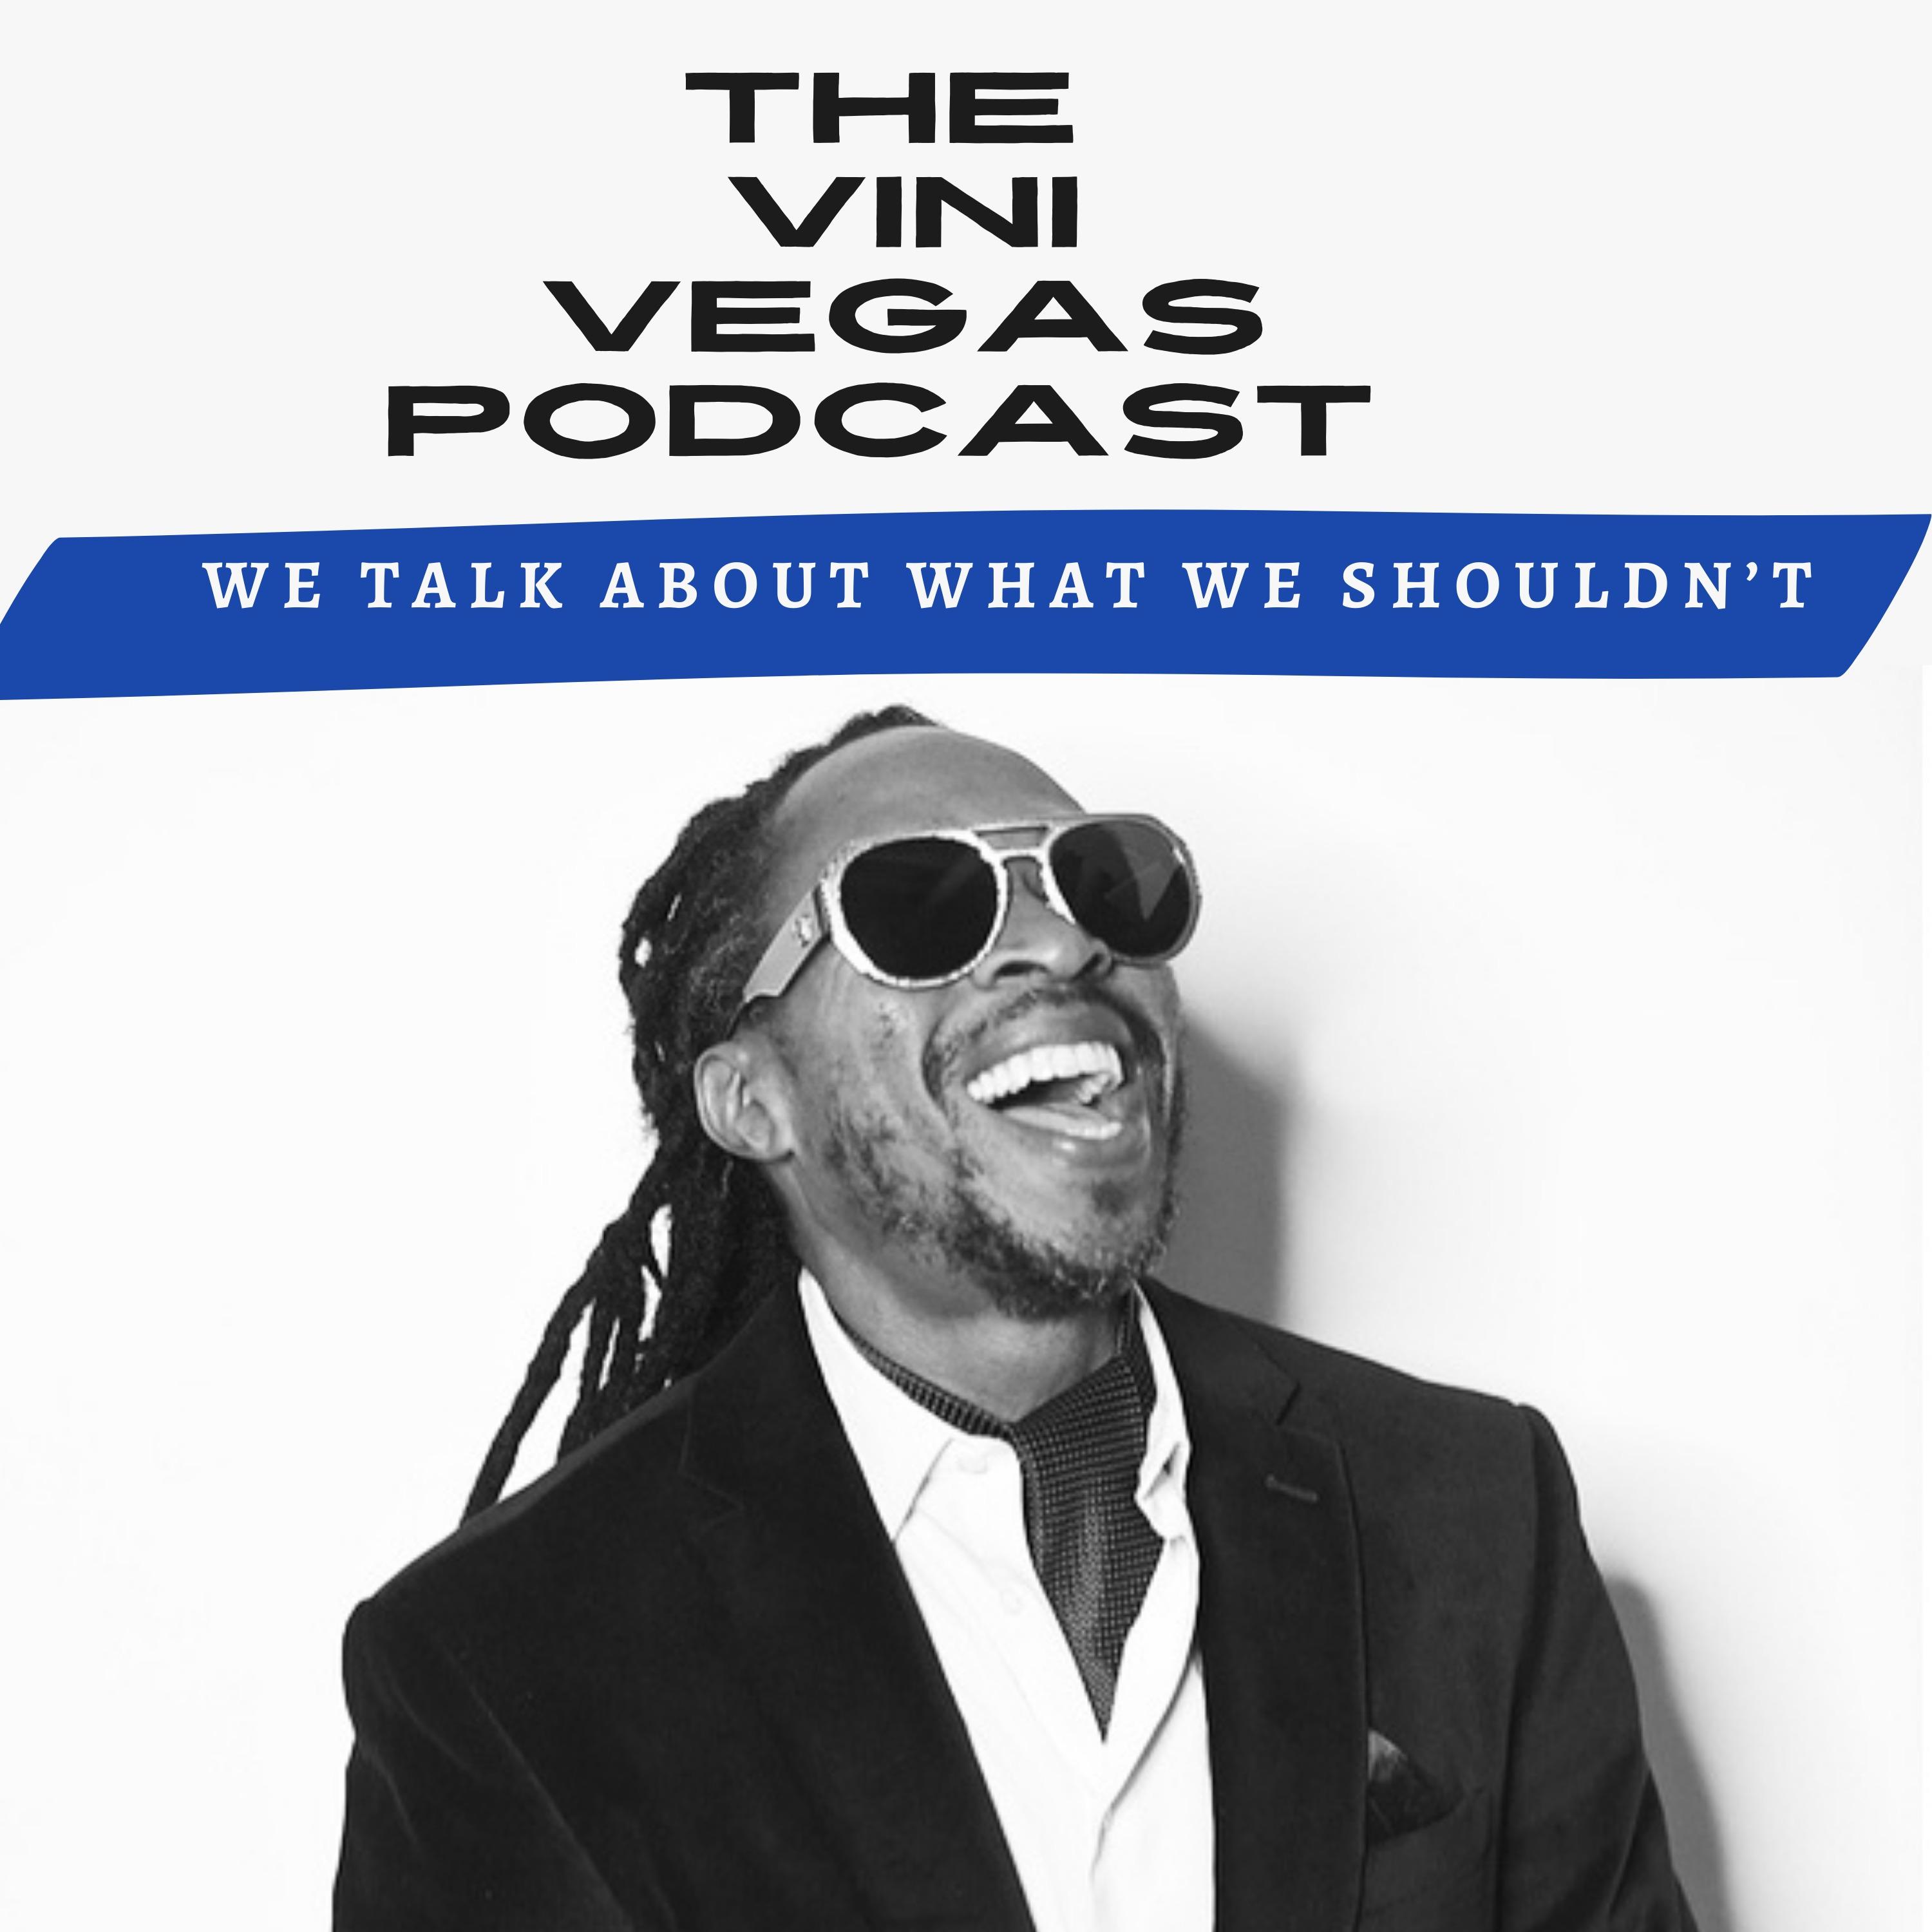 The Vini Vegas Podcast